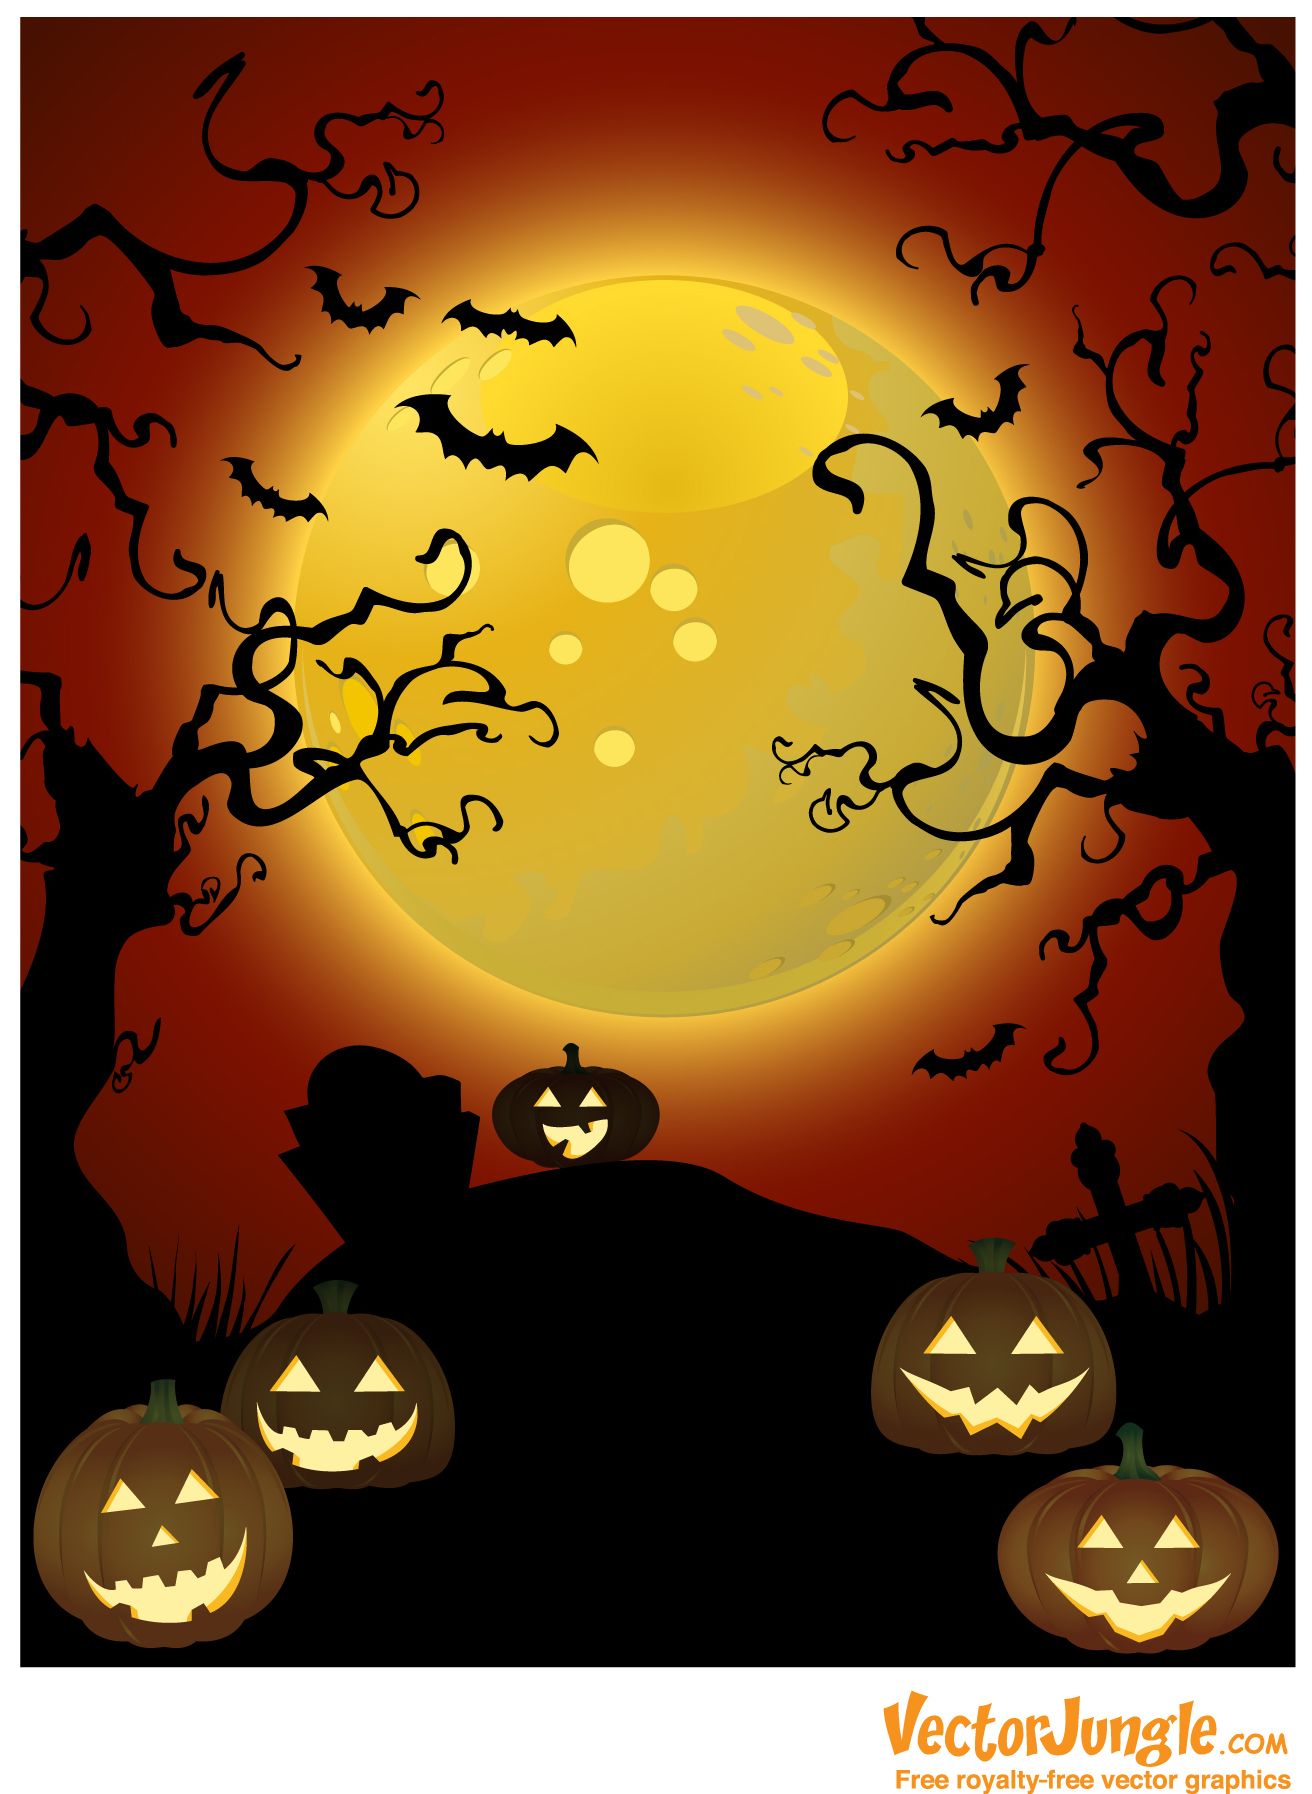 Background. VectorJungle Vector Art, Vector Graphics and Background. Free halloween picture, Halloween desktop wallpaper, Halloween image